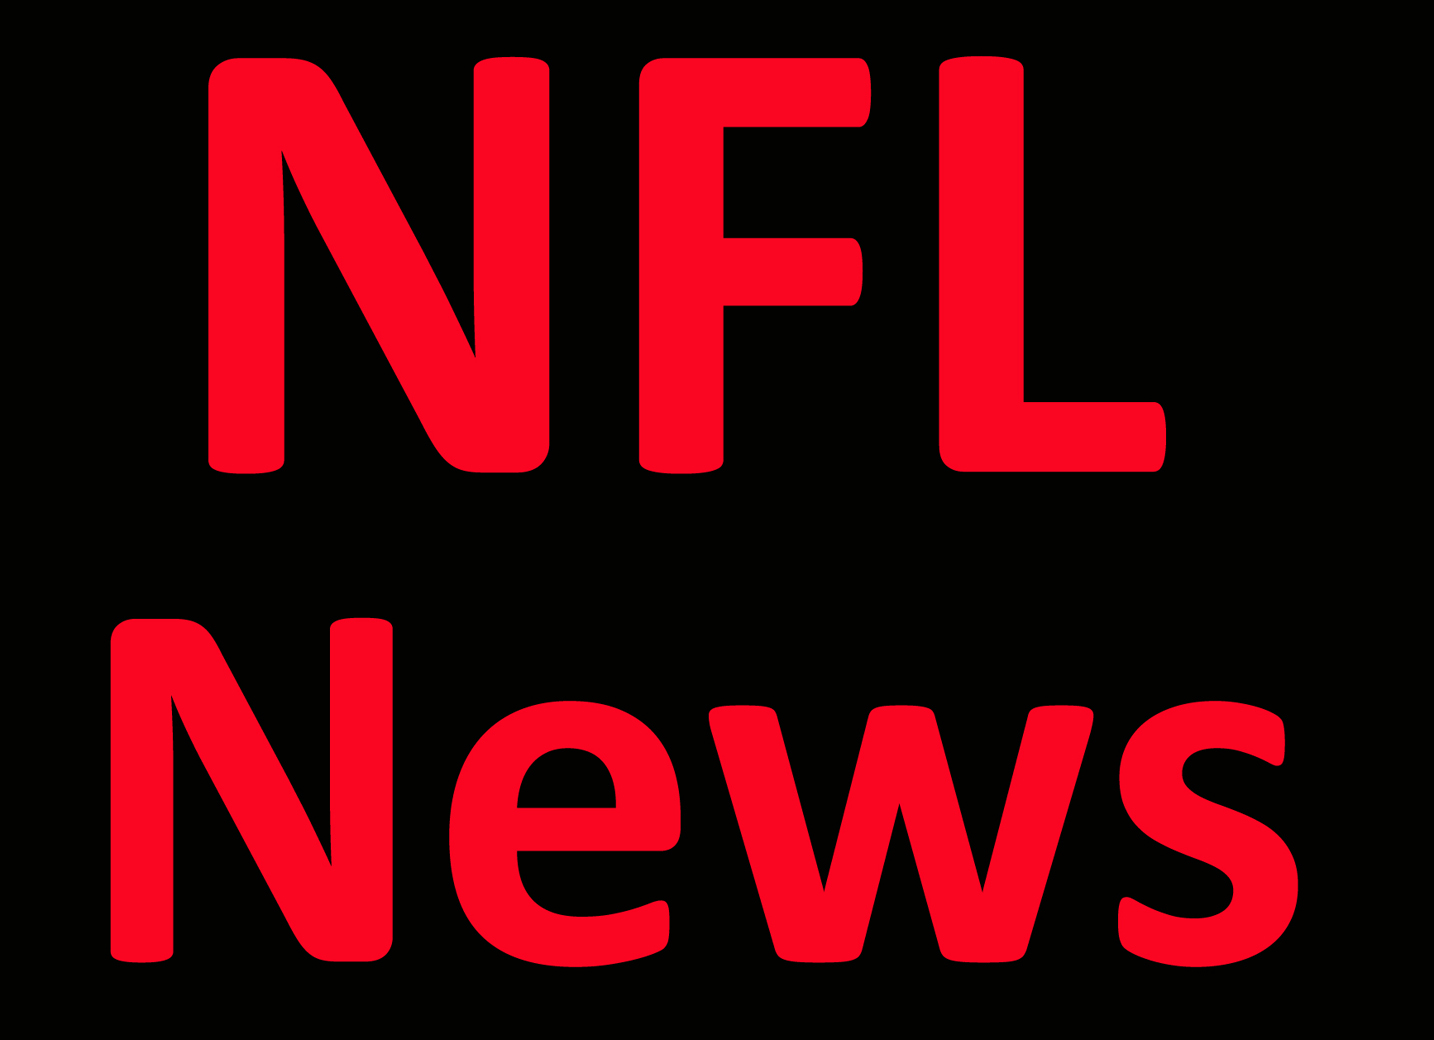 NFL News: Patriots QB Jones ‘wasn’t good enough’ in defeat Per Report